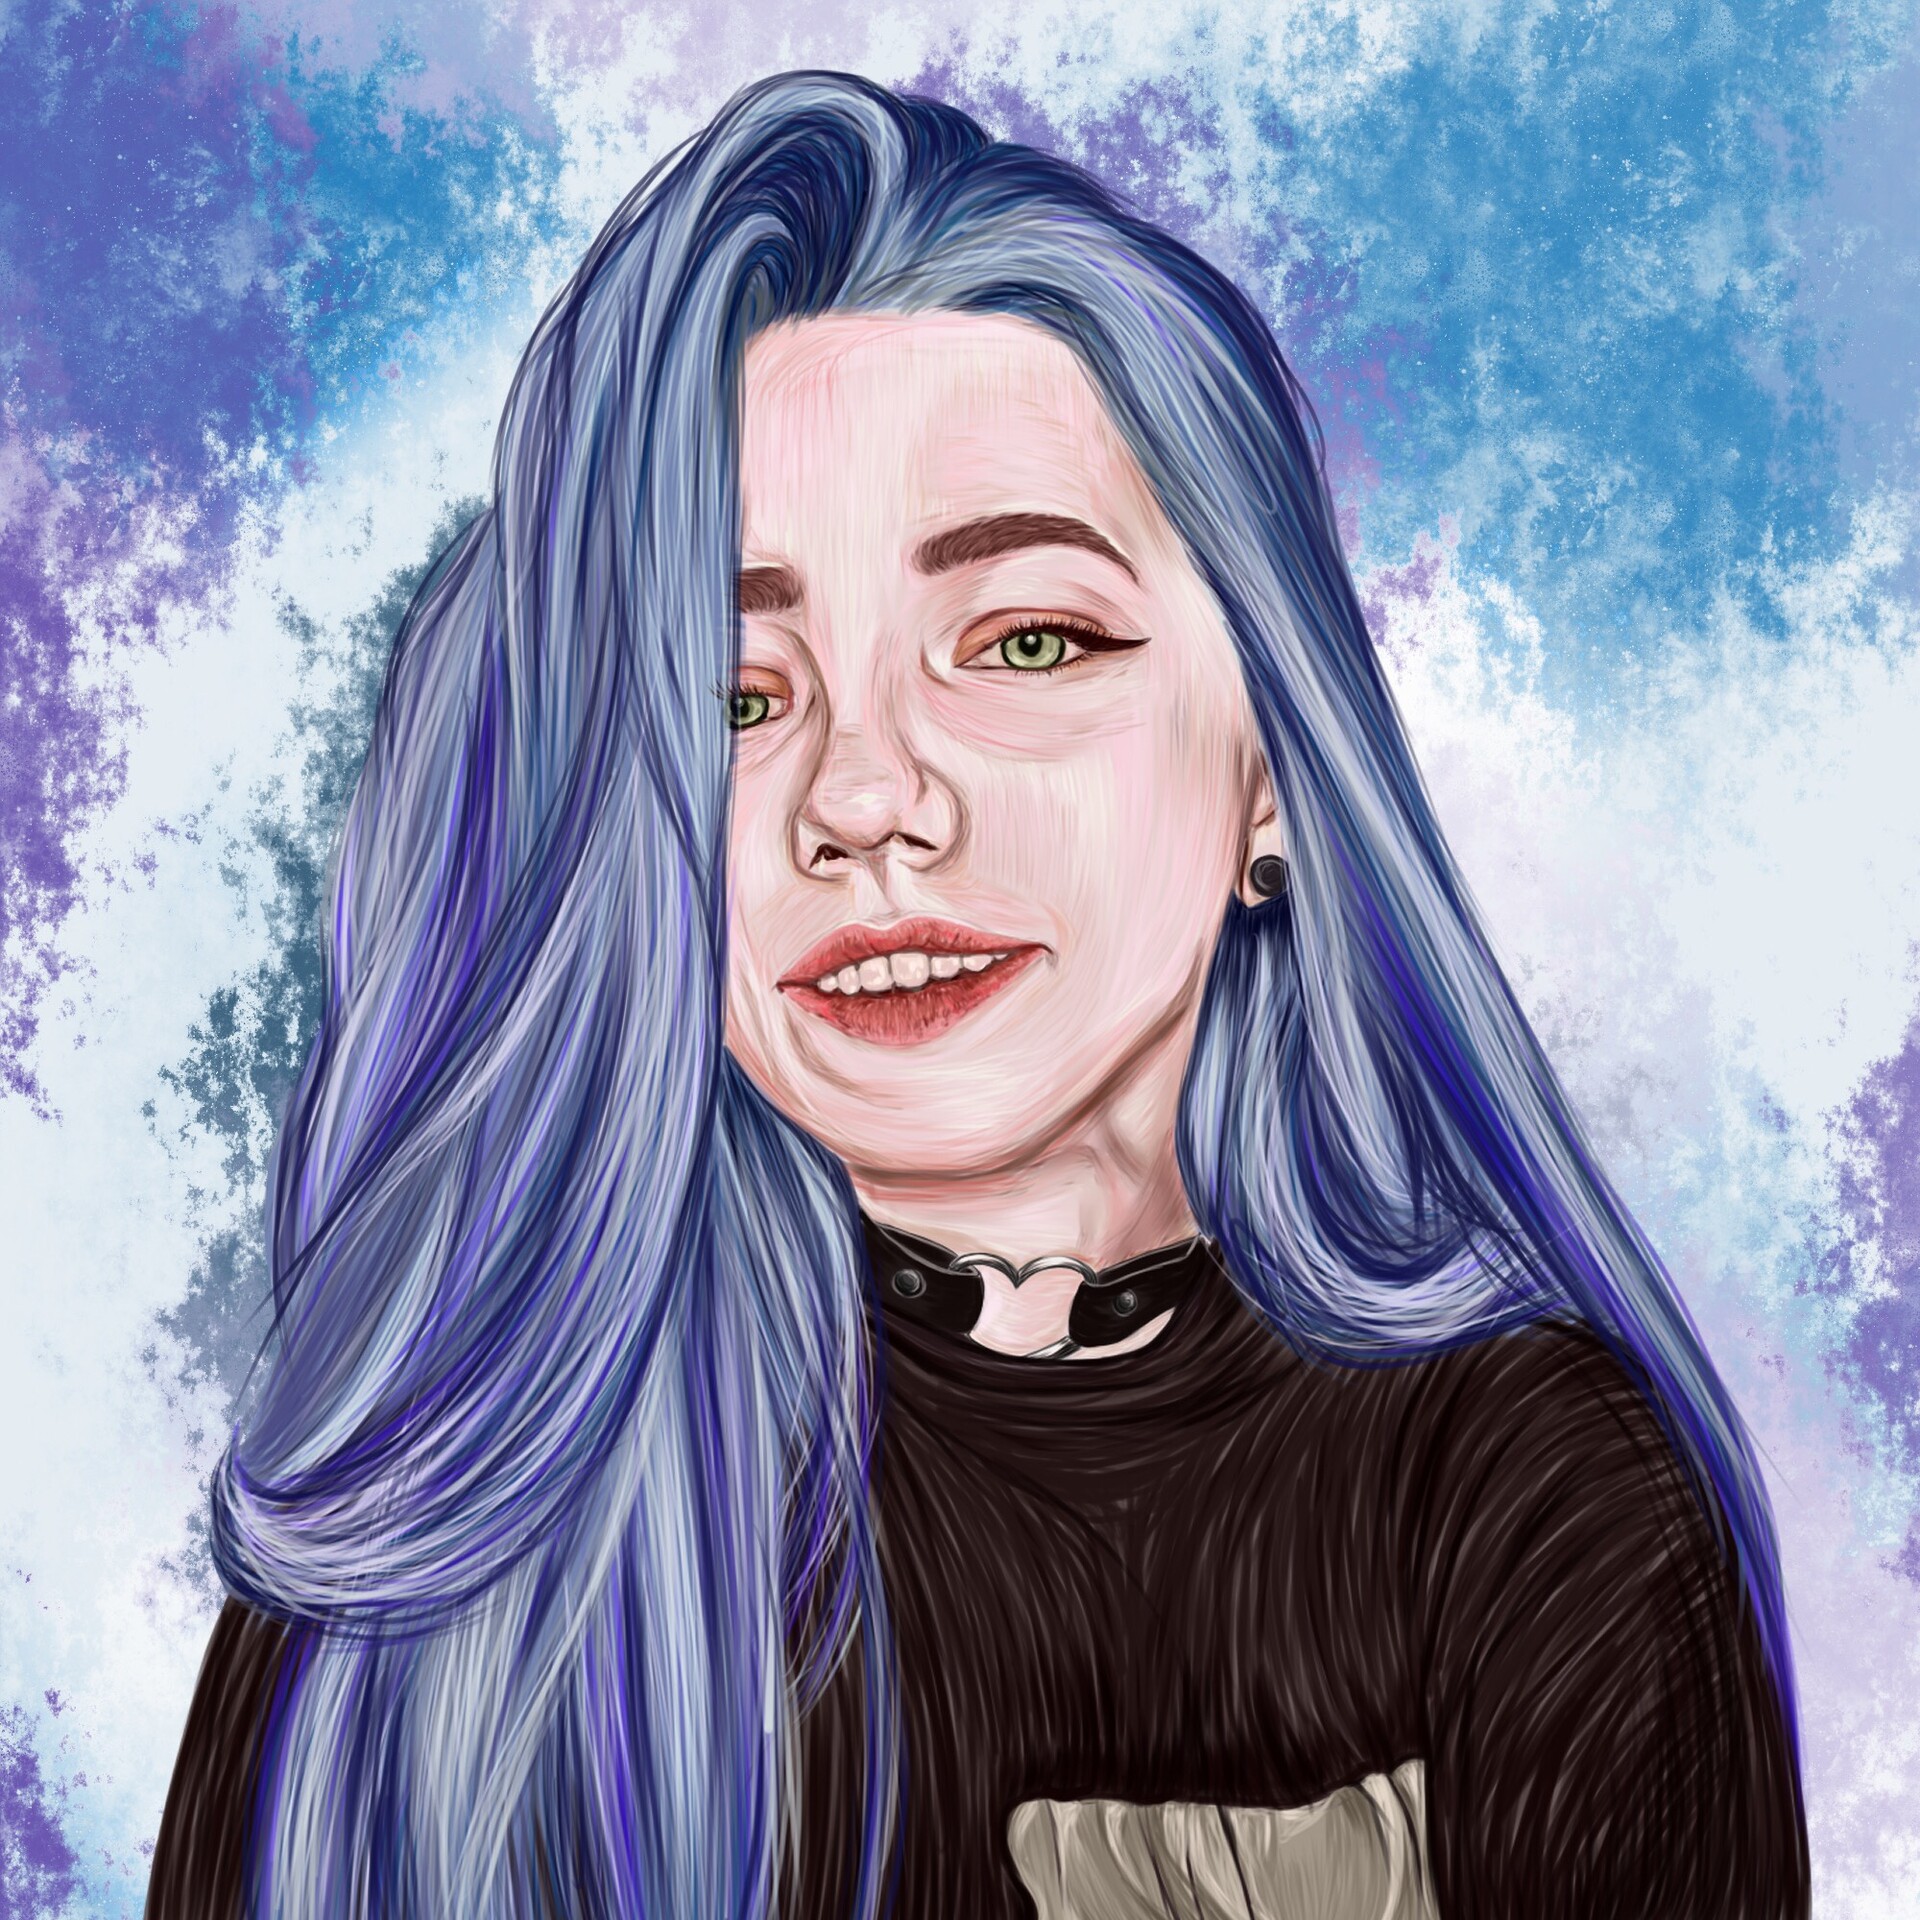 ArtStation - Blue haired girl